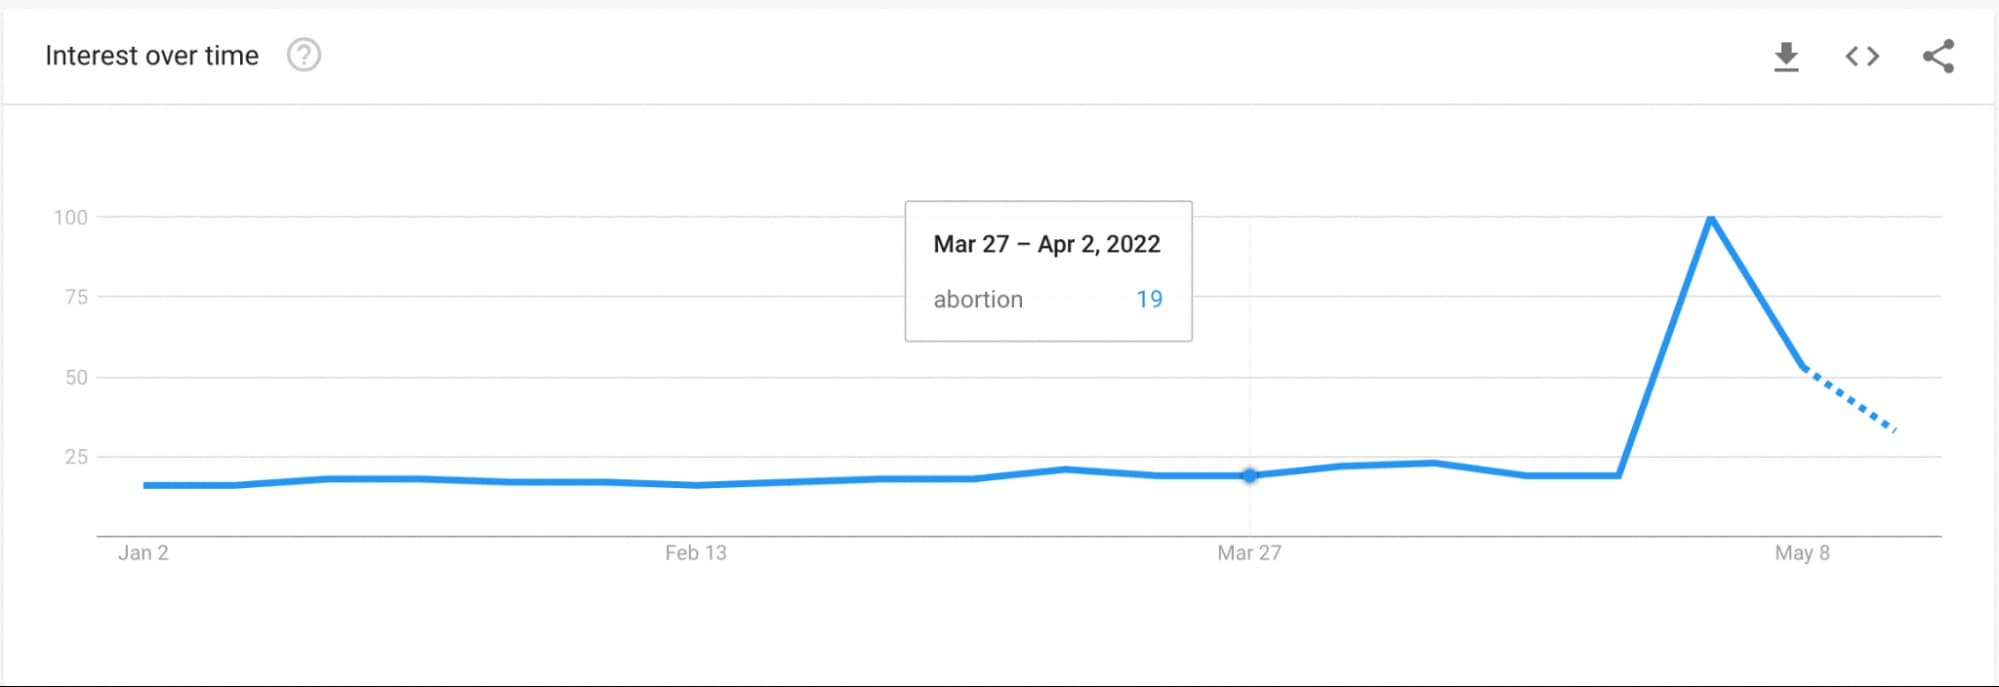 谷歌趋势:2022年对“堕胎”的兴趣